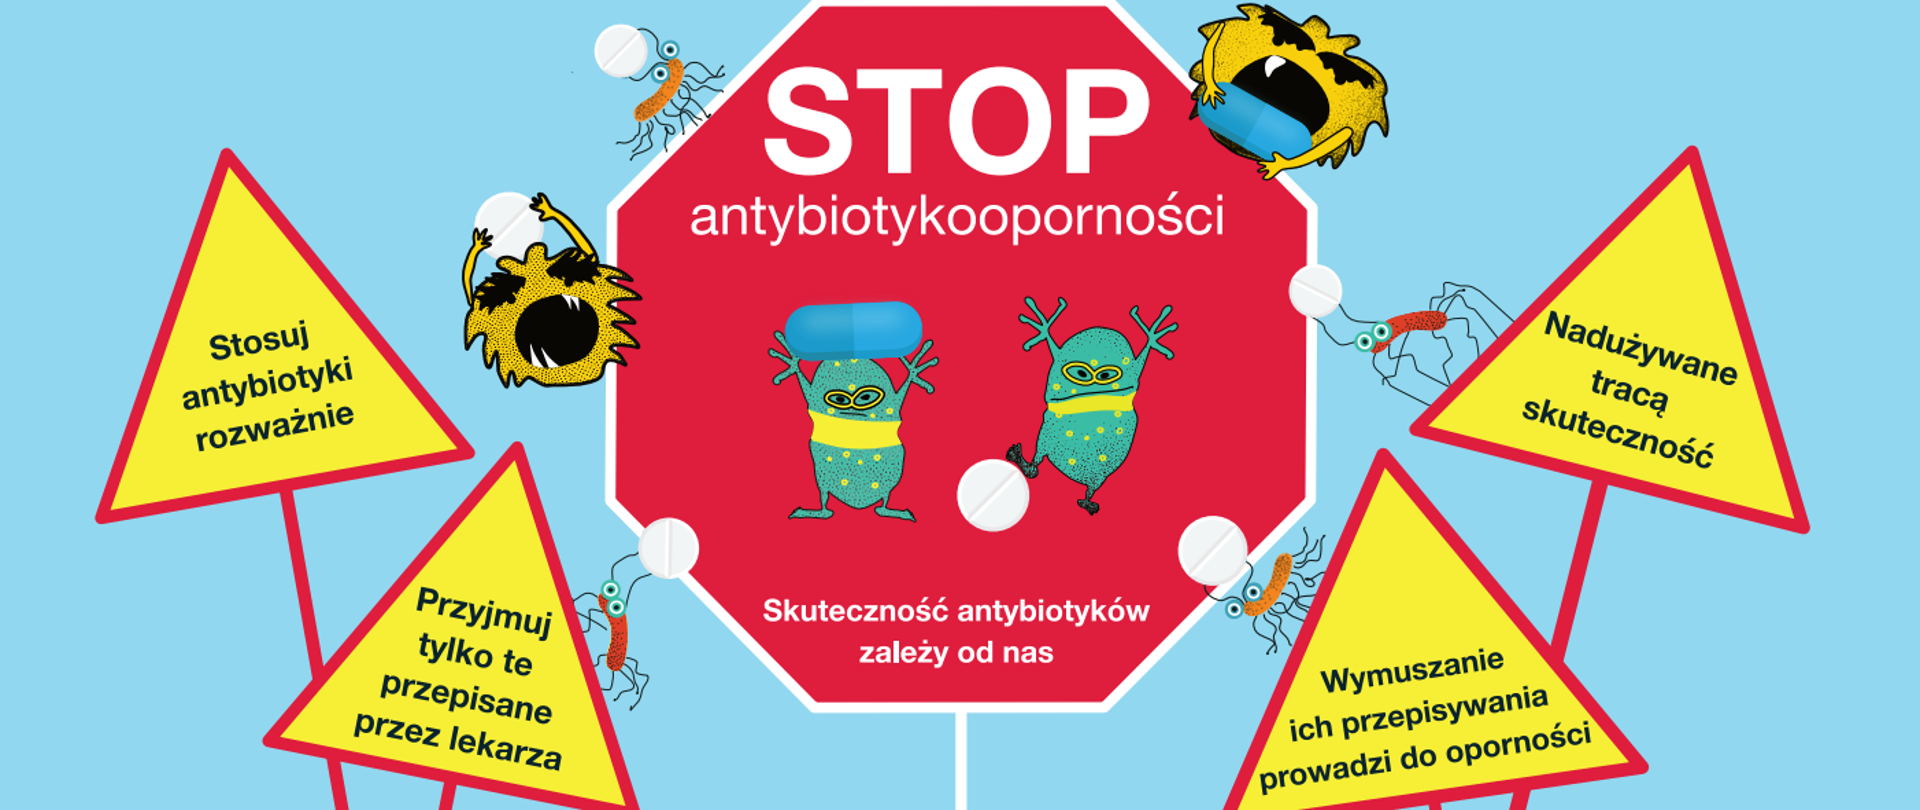 STOP antybiotykooporności